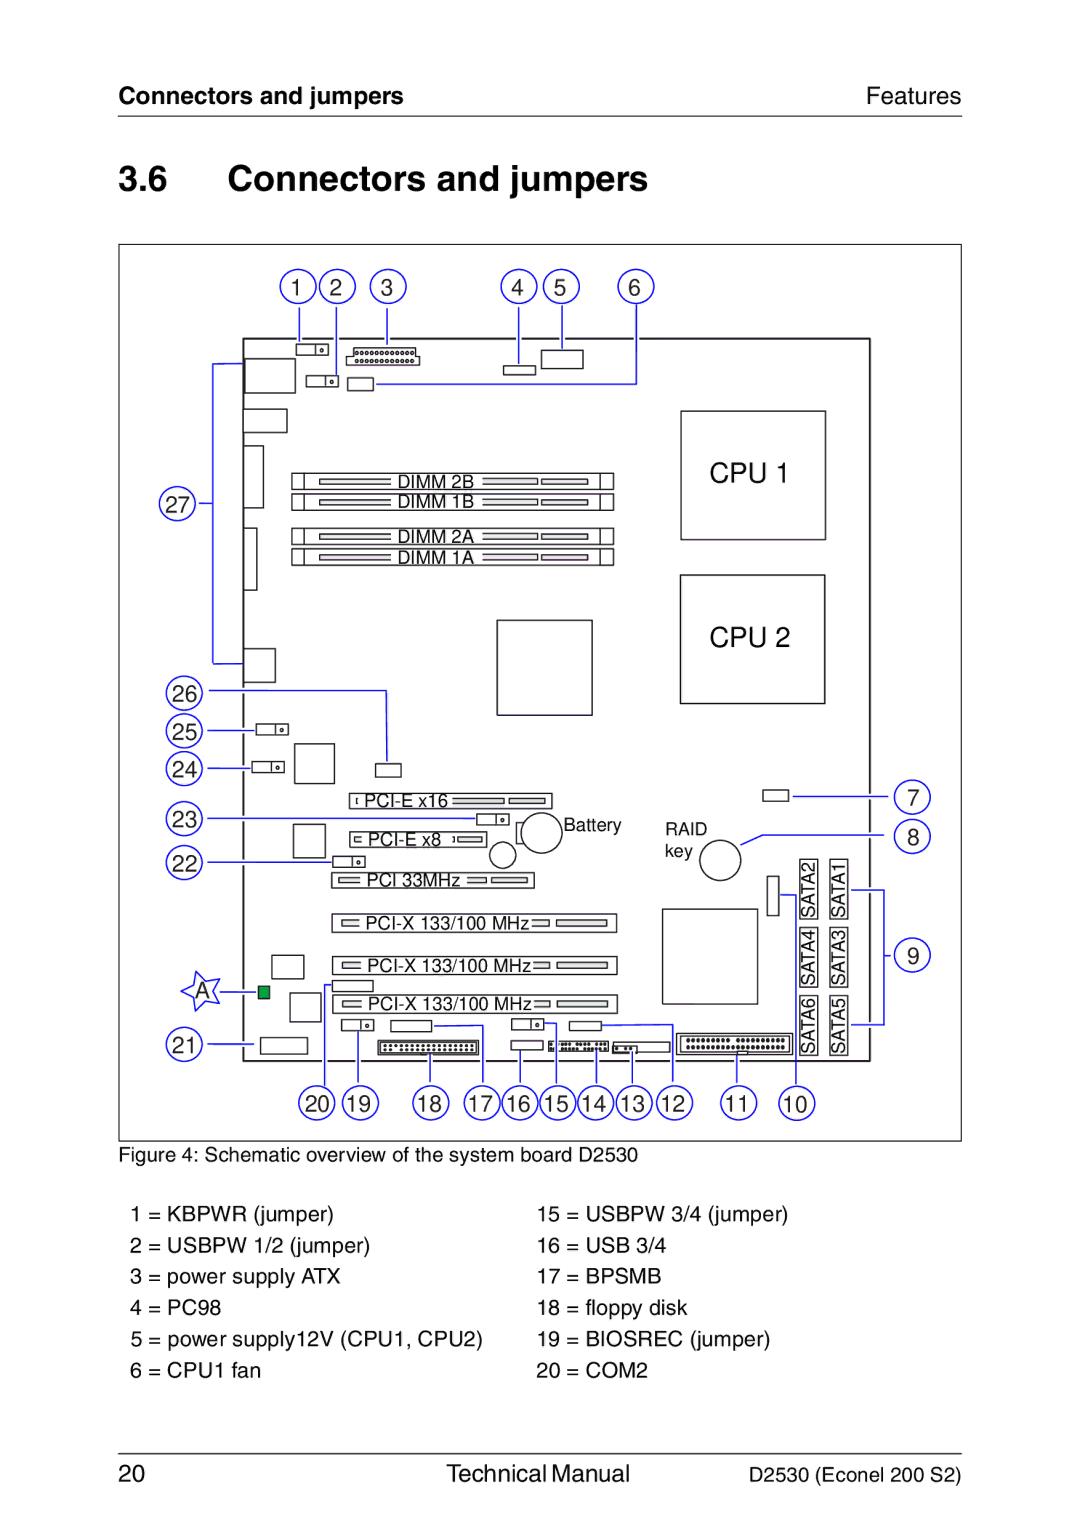 Fujitsu D2530 technical manual Connectors and jumpers 